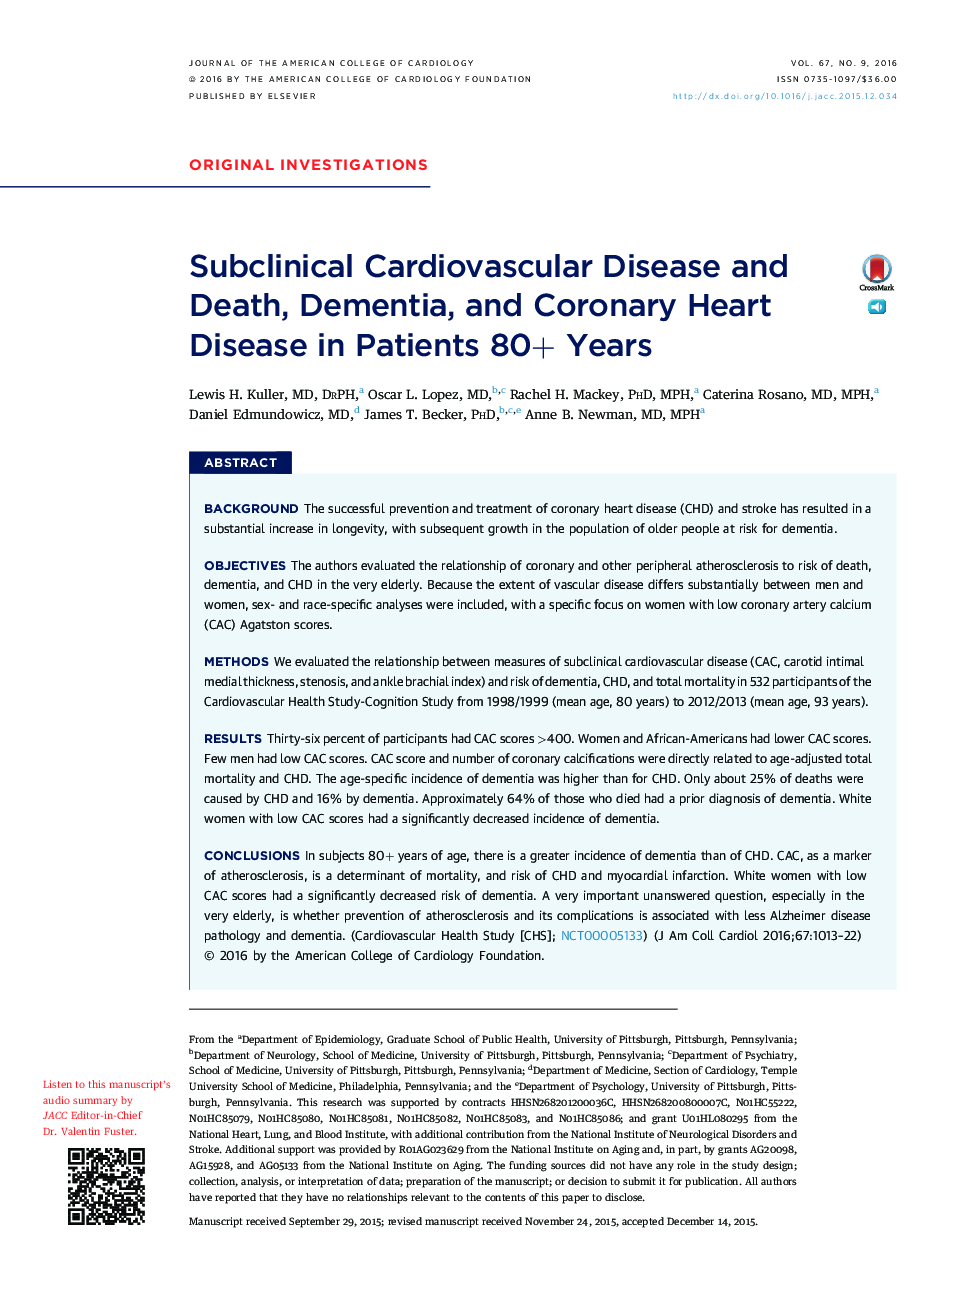 بیماریهای قلبی عروقی و مرگ و میر، دلنوادی و بیماری قلب و عروق کرونر در بیماران 80 ساله 